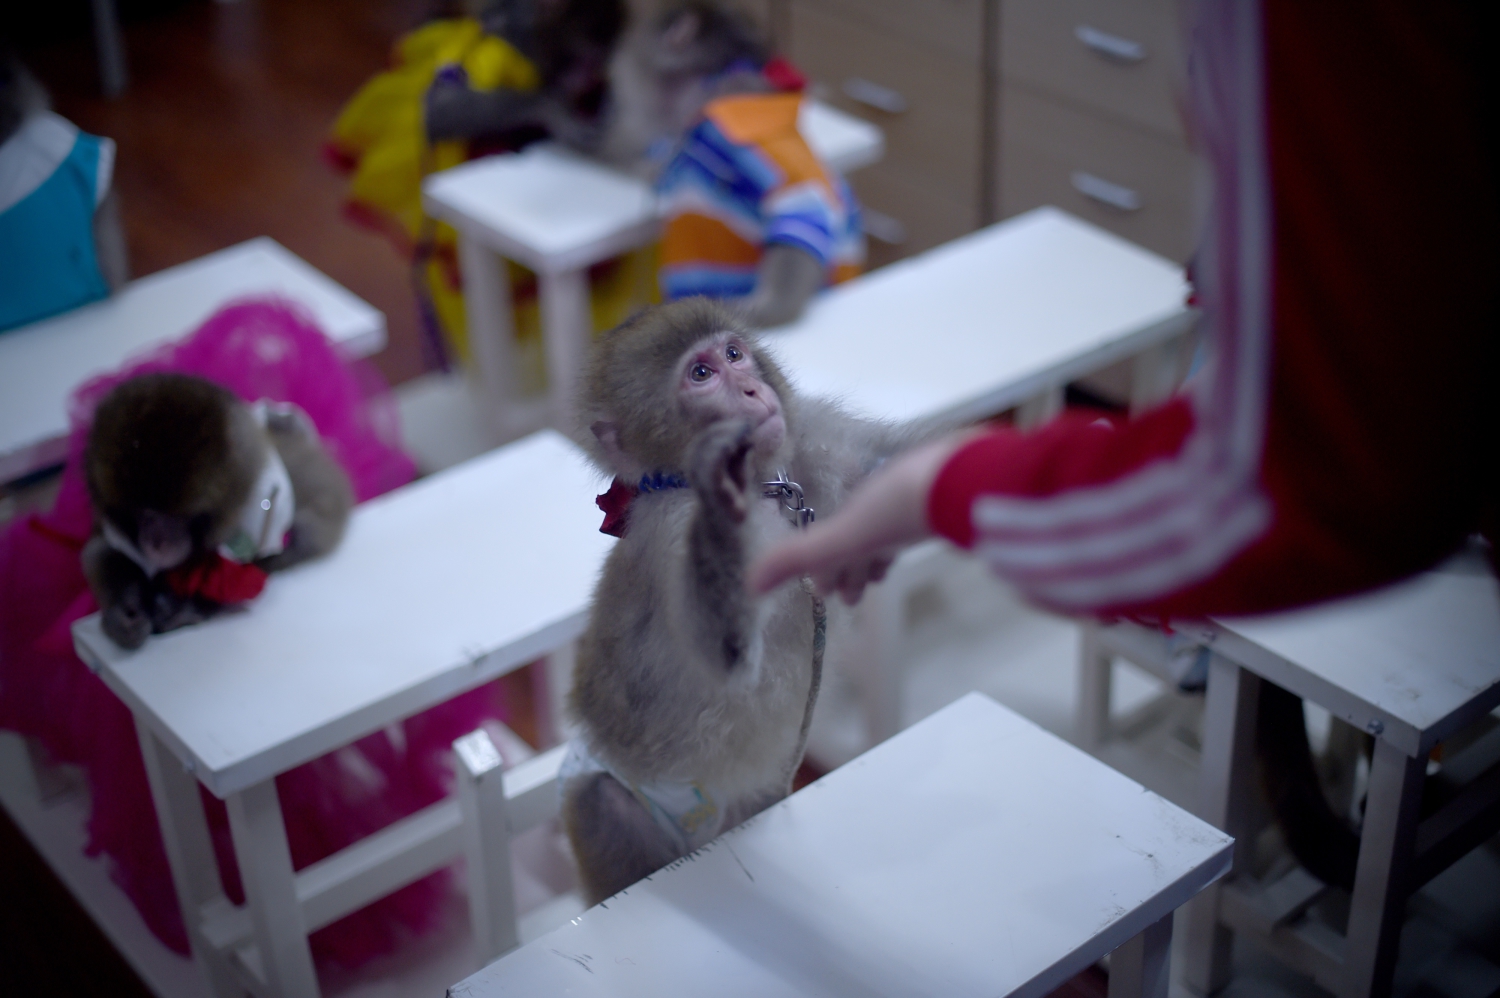 China entrena a monos para el Año Nuevo, ¿espectáculo o maltrato?